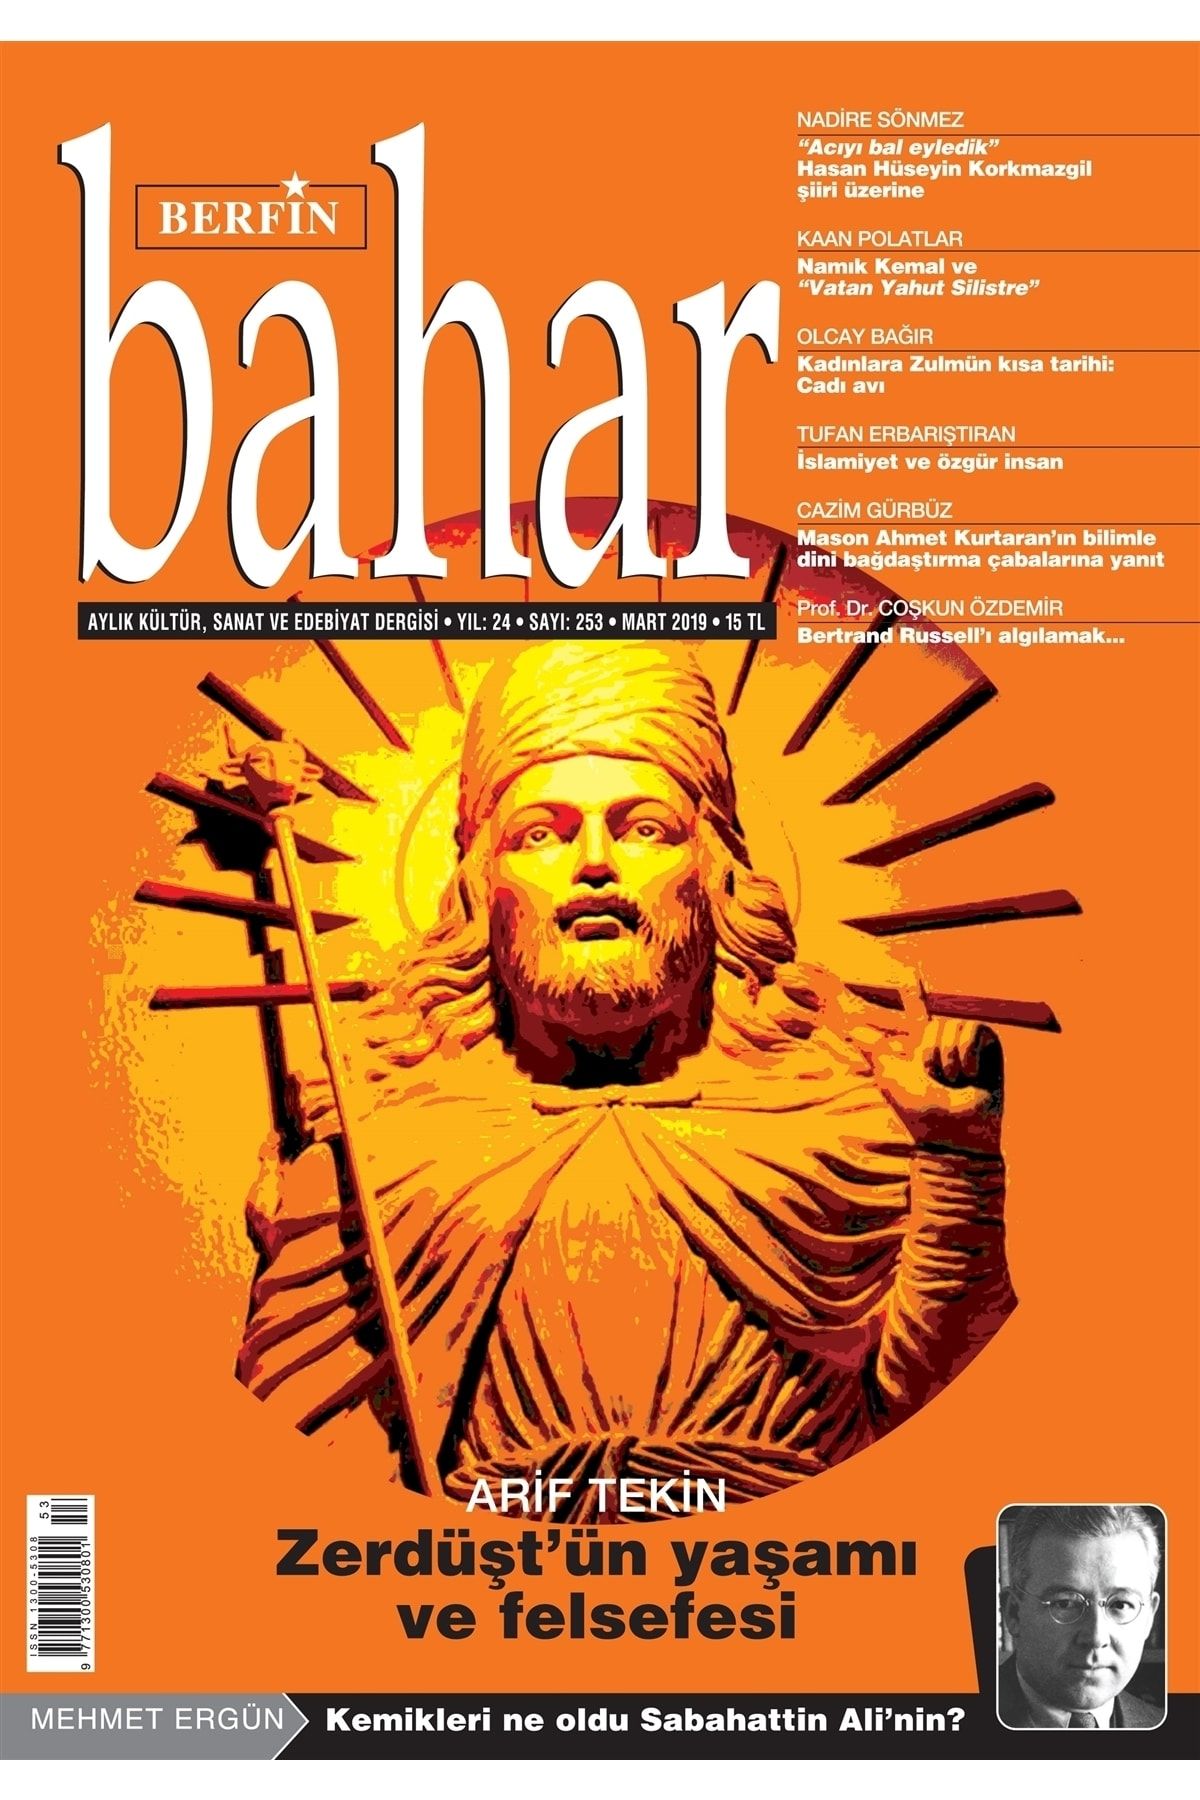 Berfin Bahar Dergisi Berfin Bahar Aylık Kültür Sanat ve Edebiyat Dergisi Sayı: 253 Mart 2019 - Kolektif